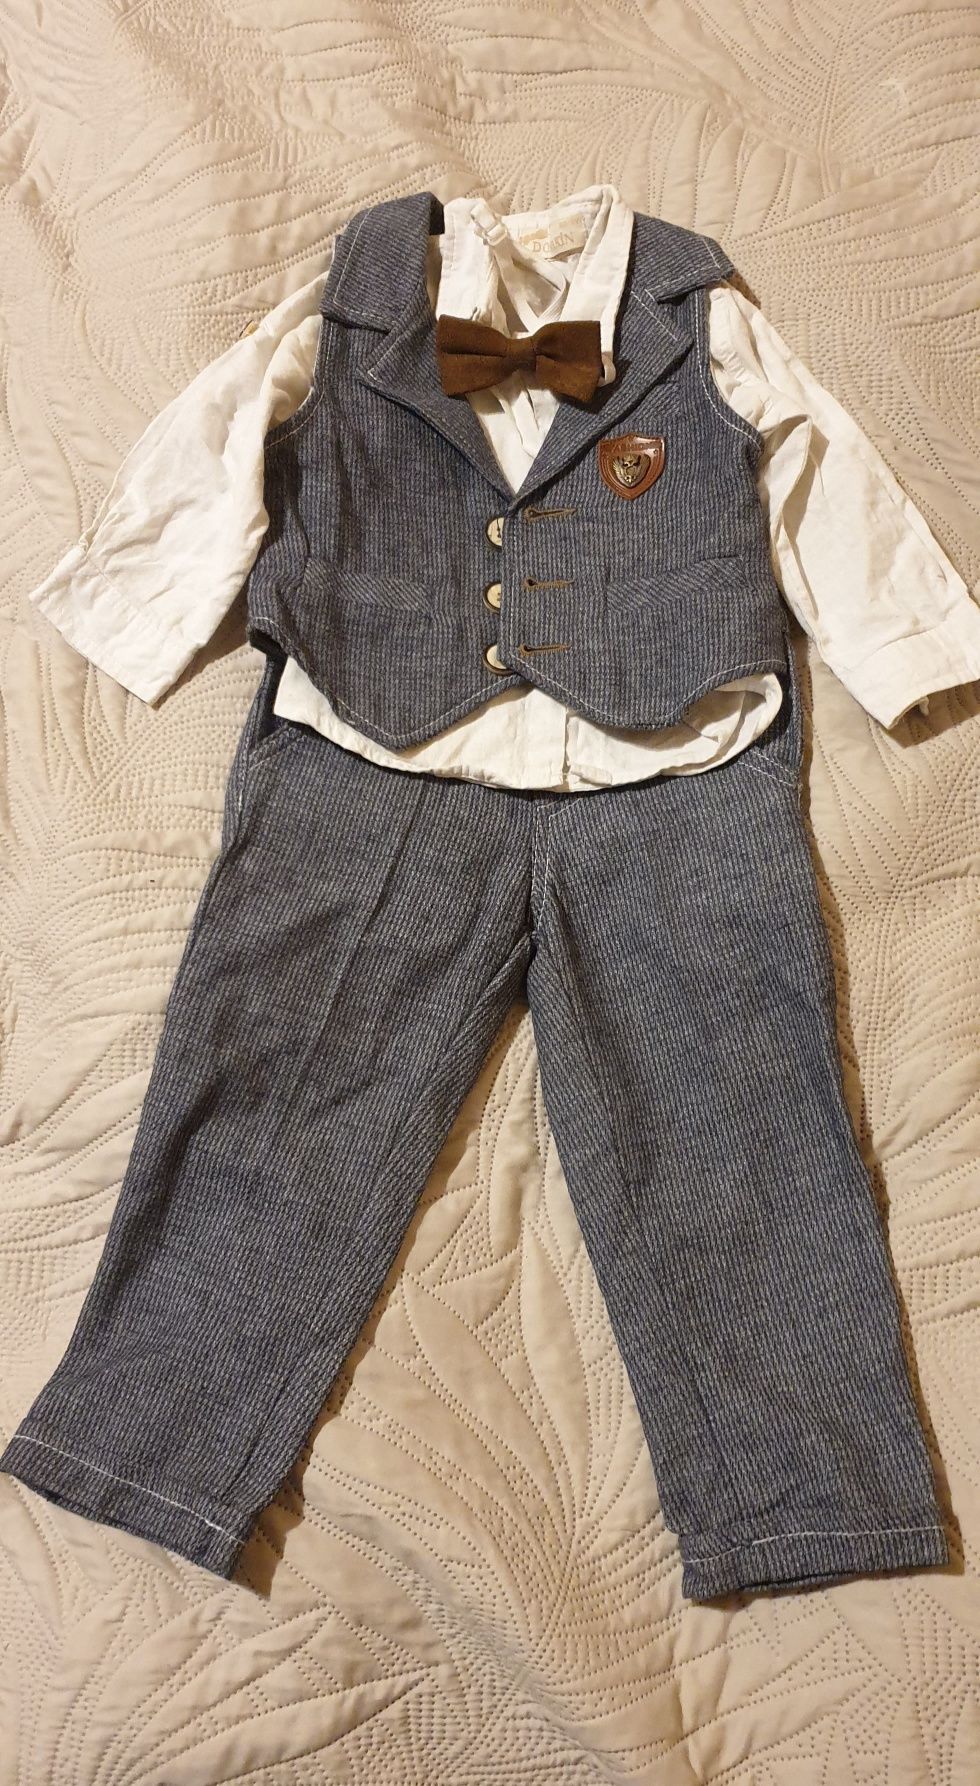 Costum/compleu elegant băieței de 1 an